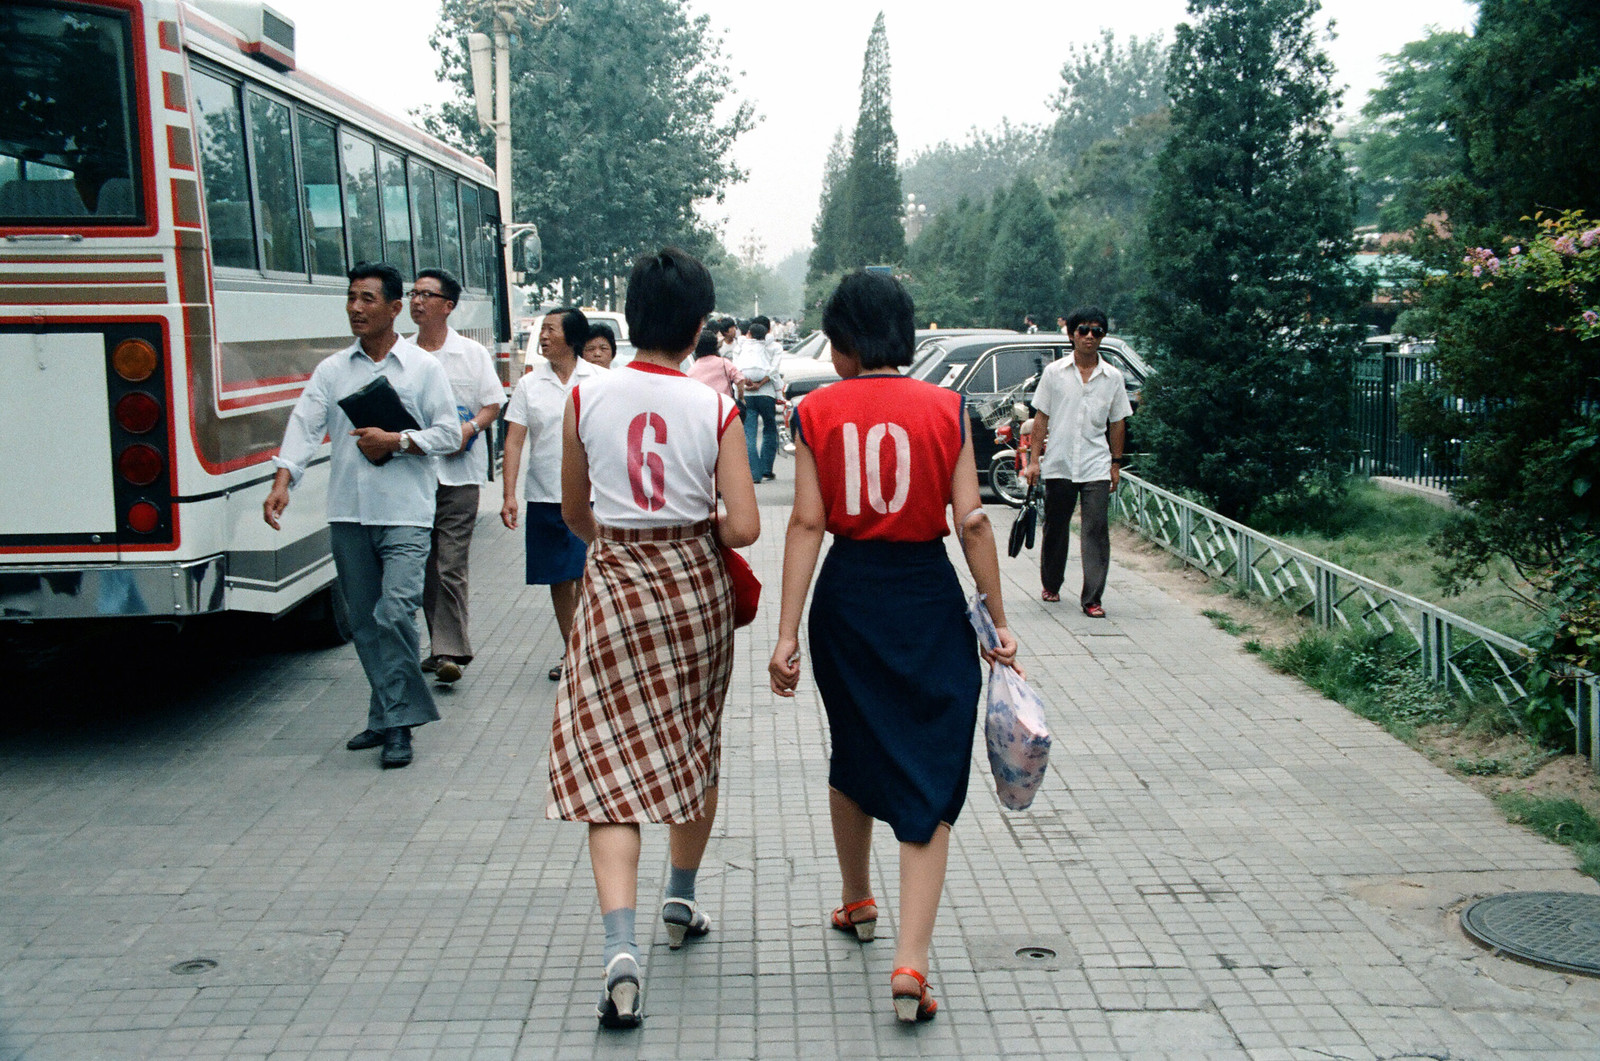 Chùm ảnh: Thành phố Bắc Kinh năm 1986 qua ống kính một người Mỹ